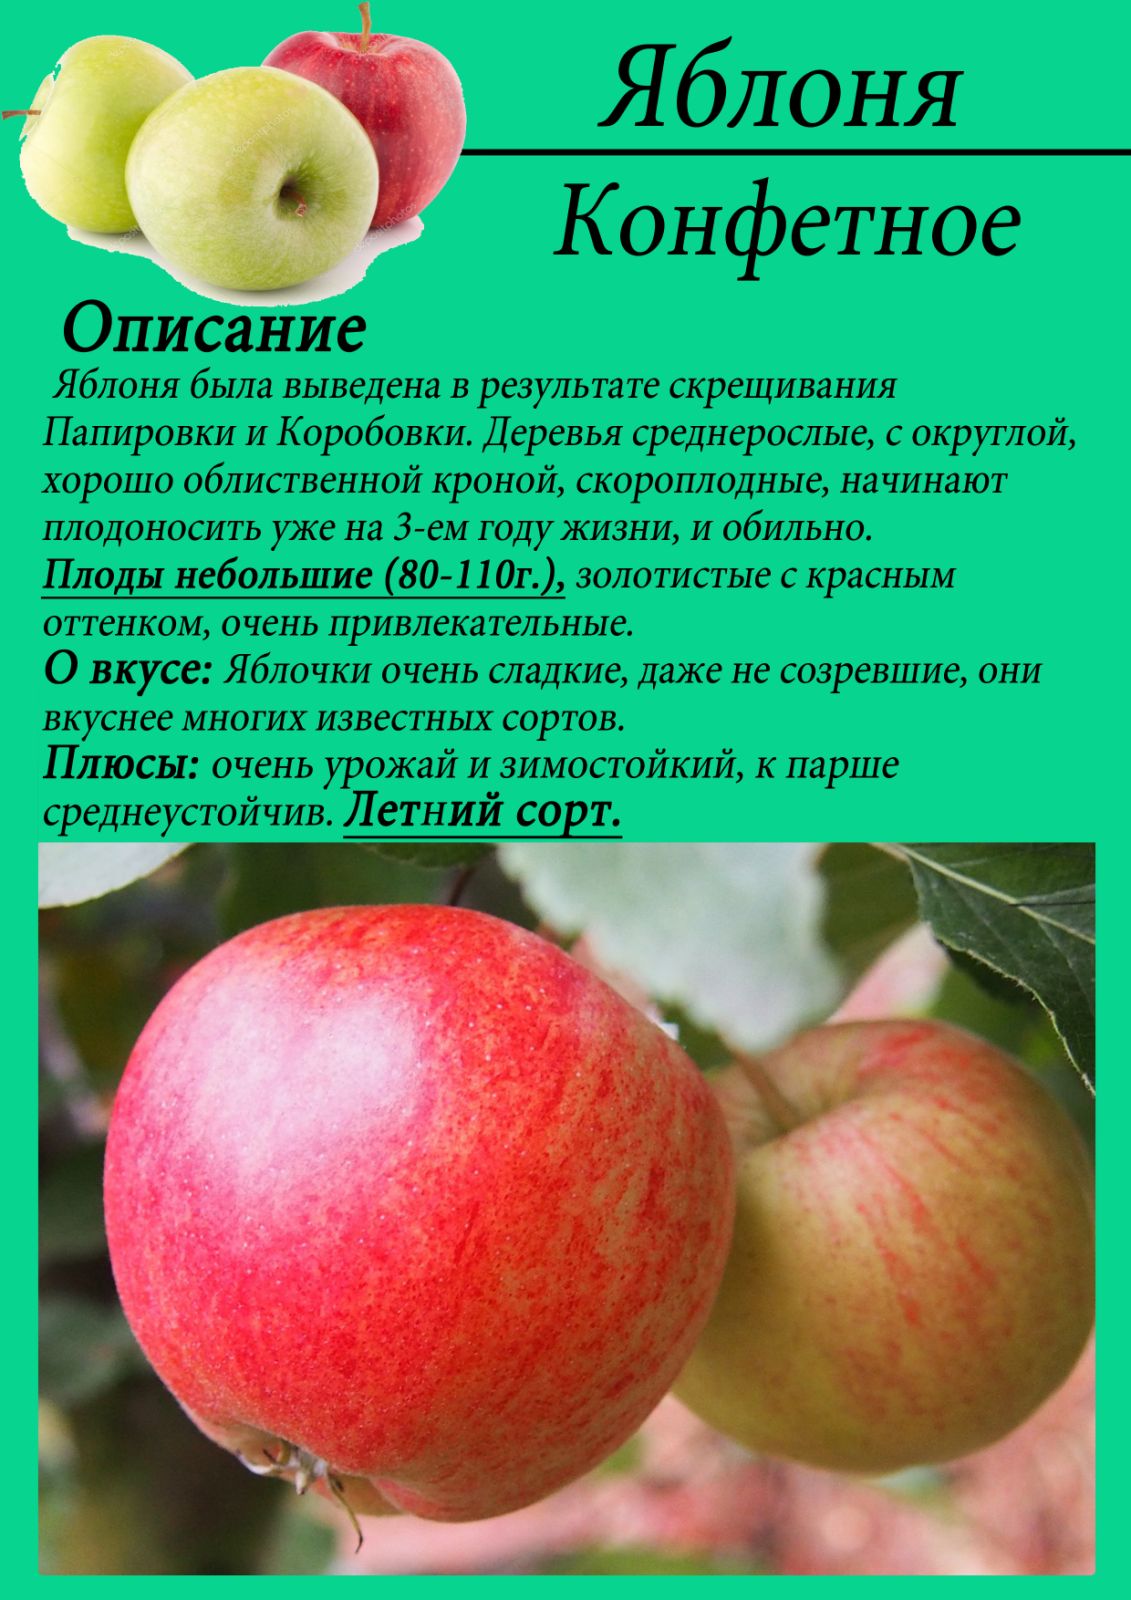 Летние сорта яблок - дачная жизнь